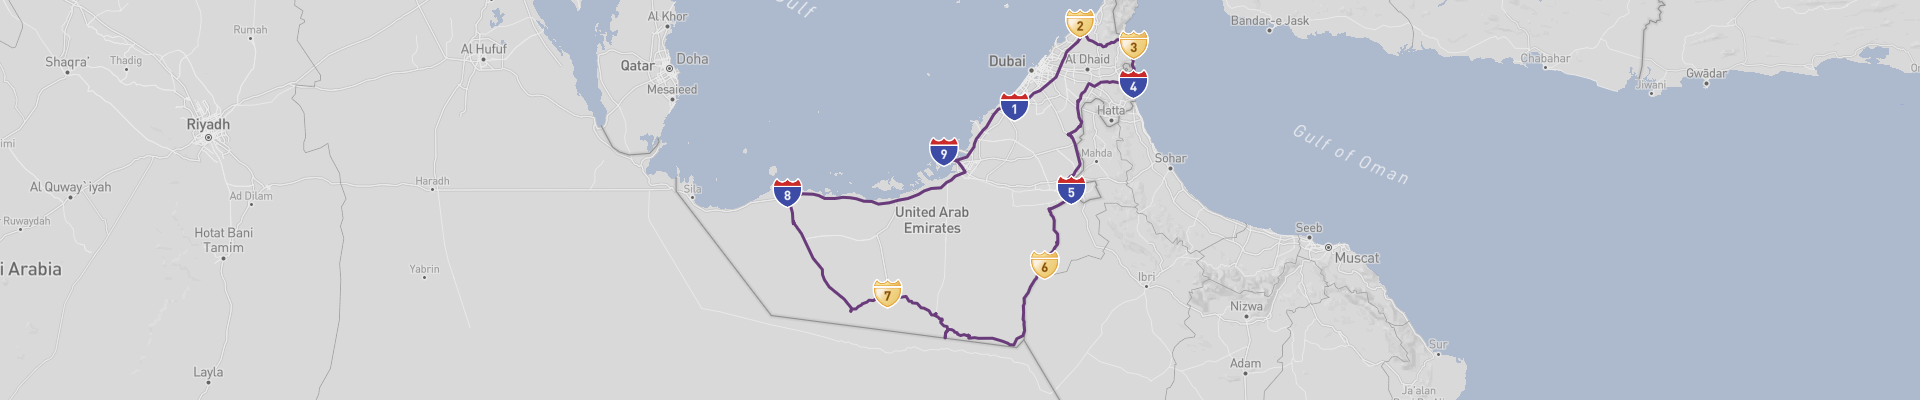 Объединенные Арабские Эмираты на автомобиле